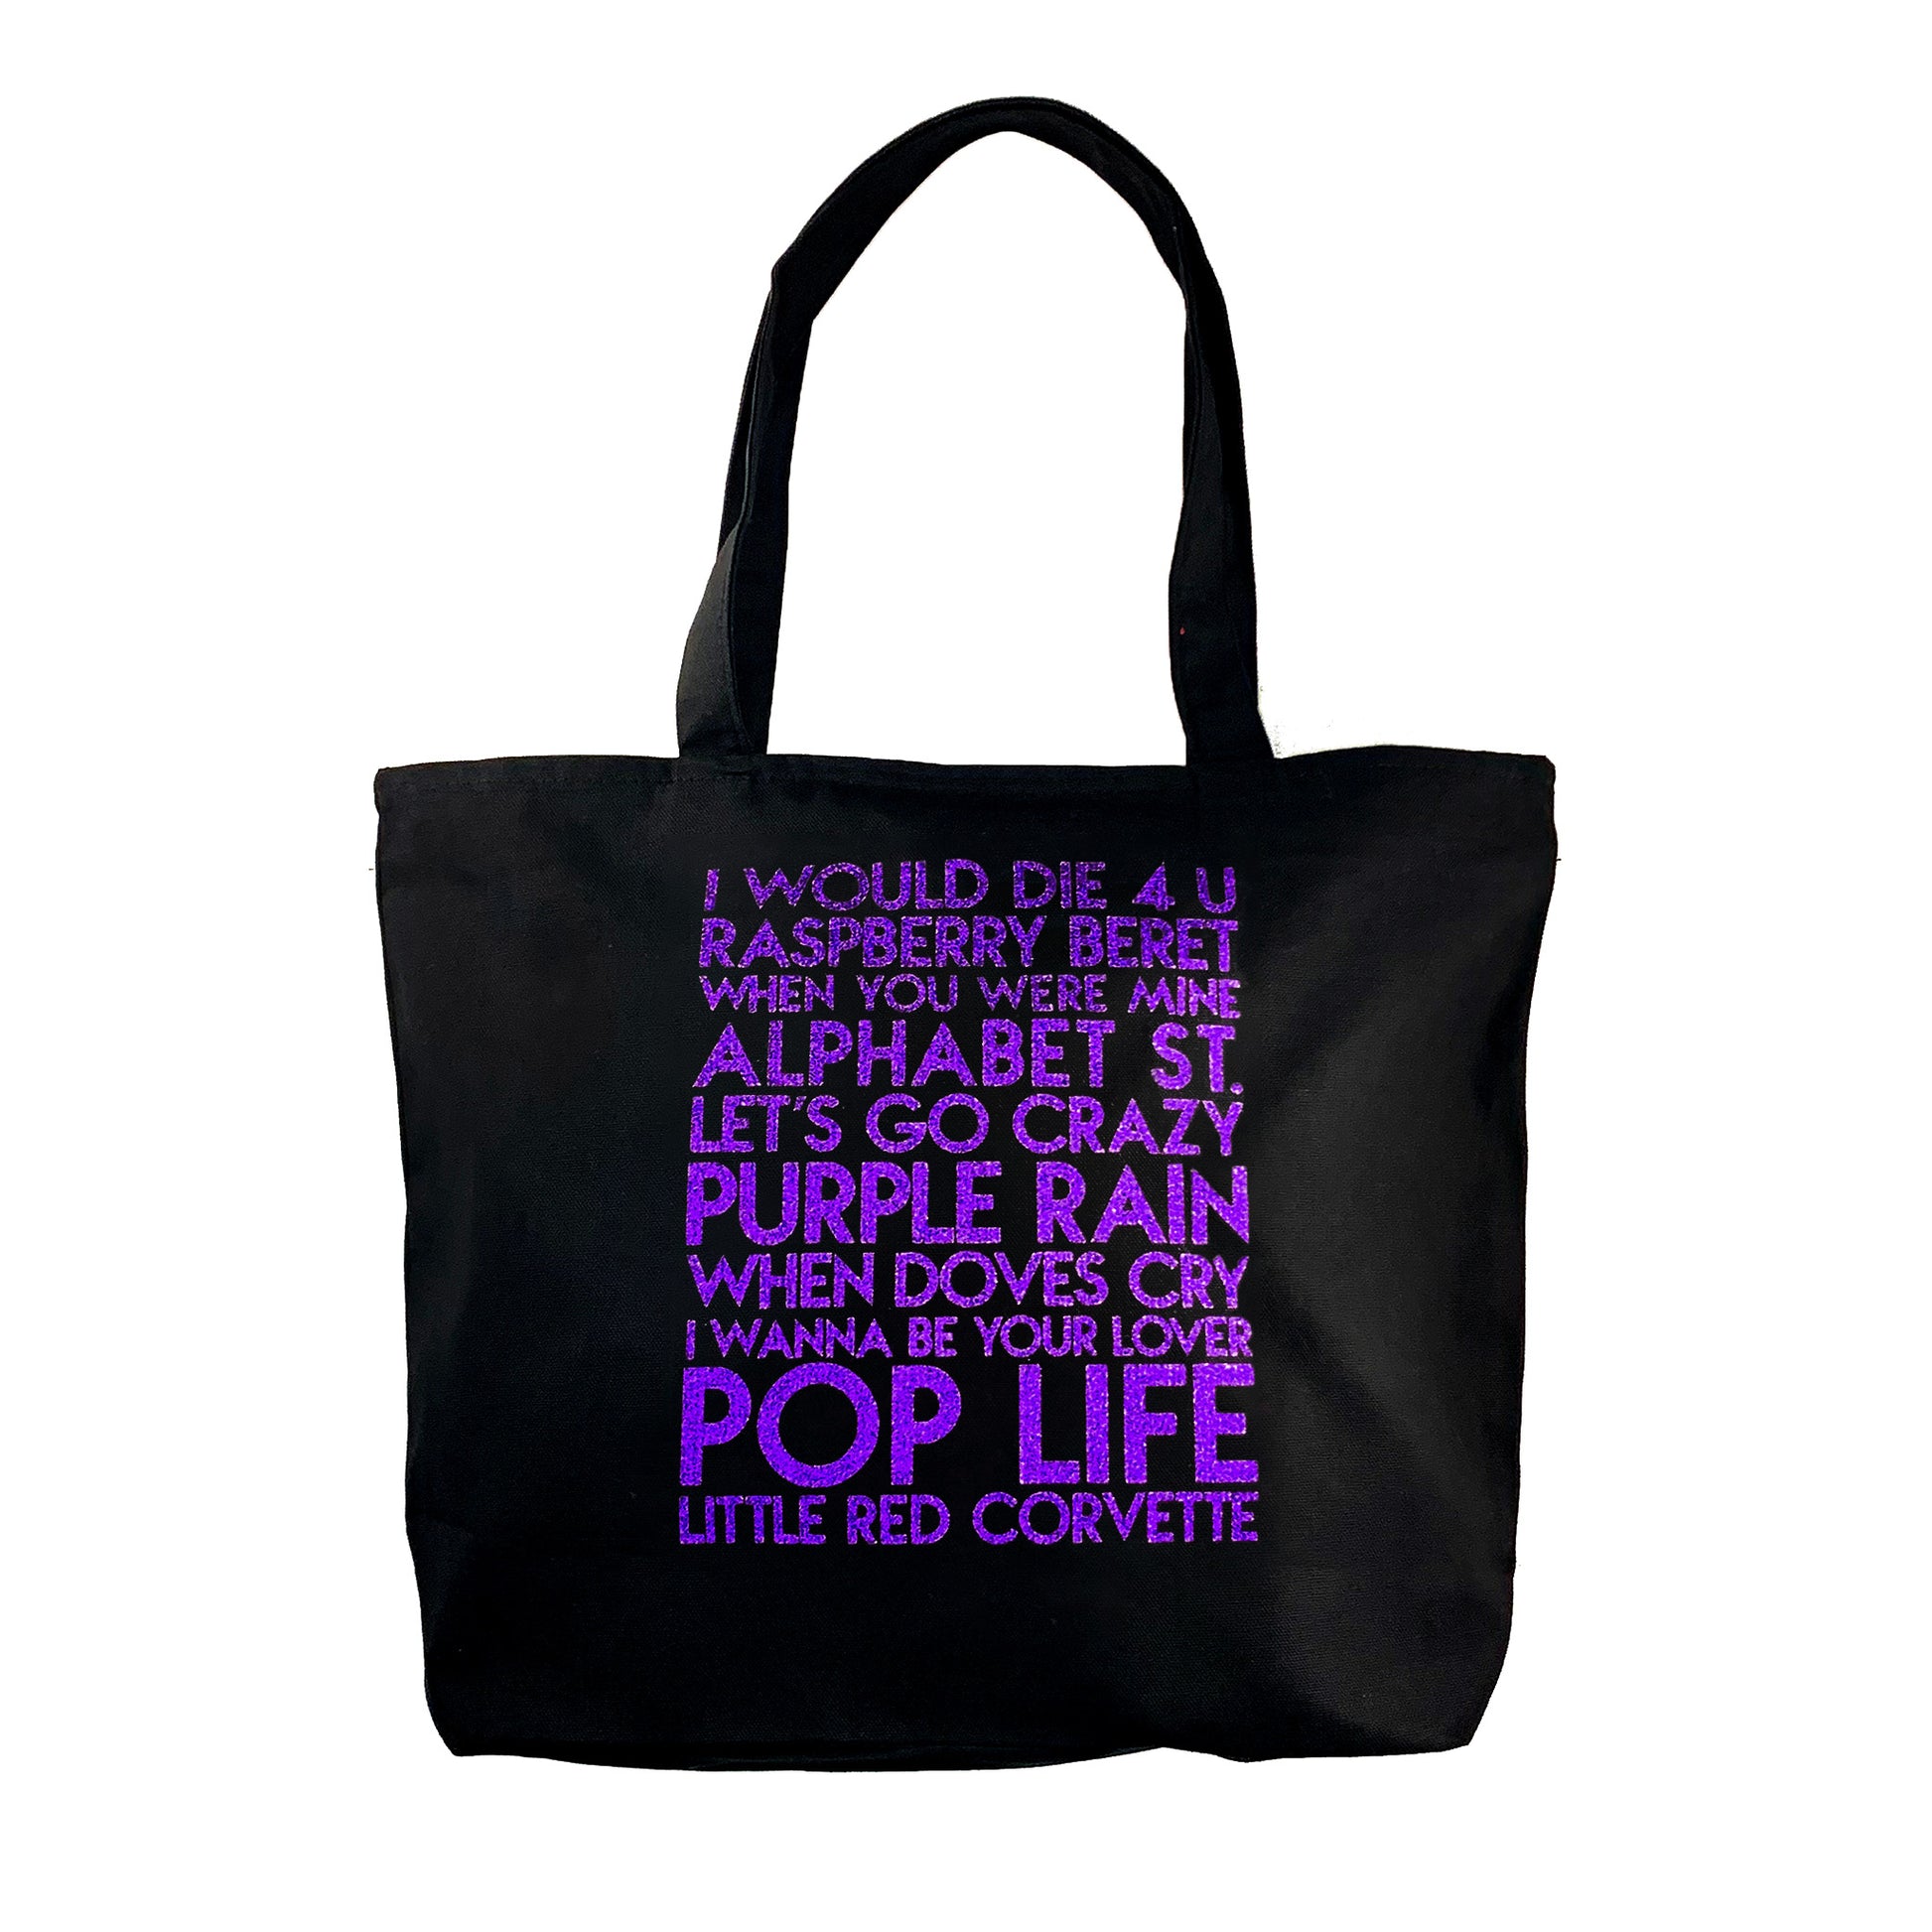 Custom text sample - music artist songs - custom purple glitter text on deluxe black canvas tote - Custom YourTen tote bag by BBJ / Glitter Garage